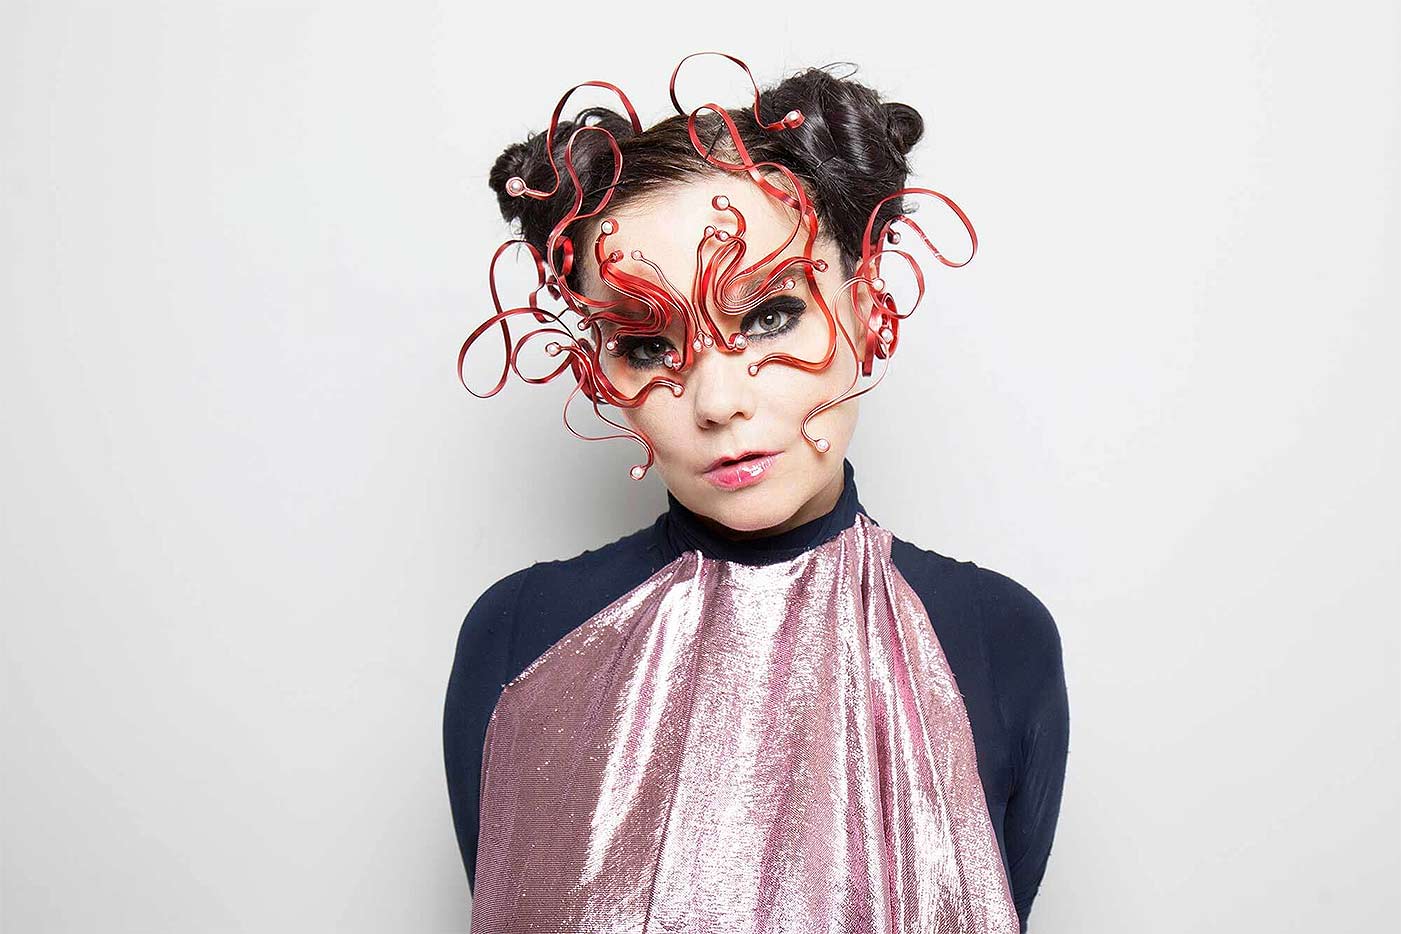 Björk lanzará una versión en directo de "Utopía" con más flautas